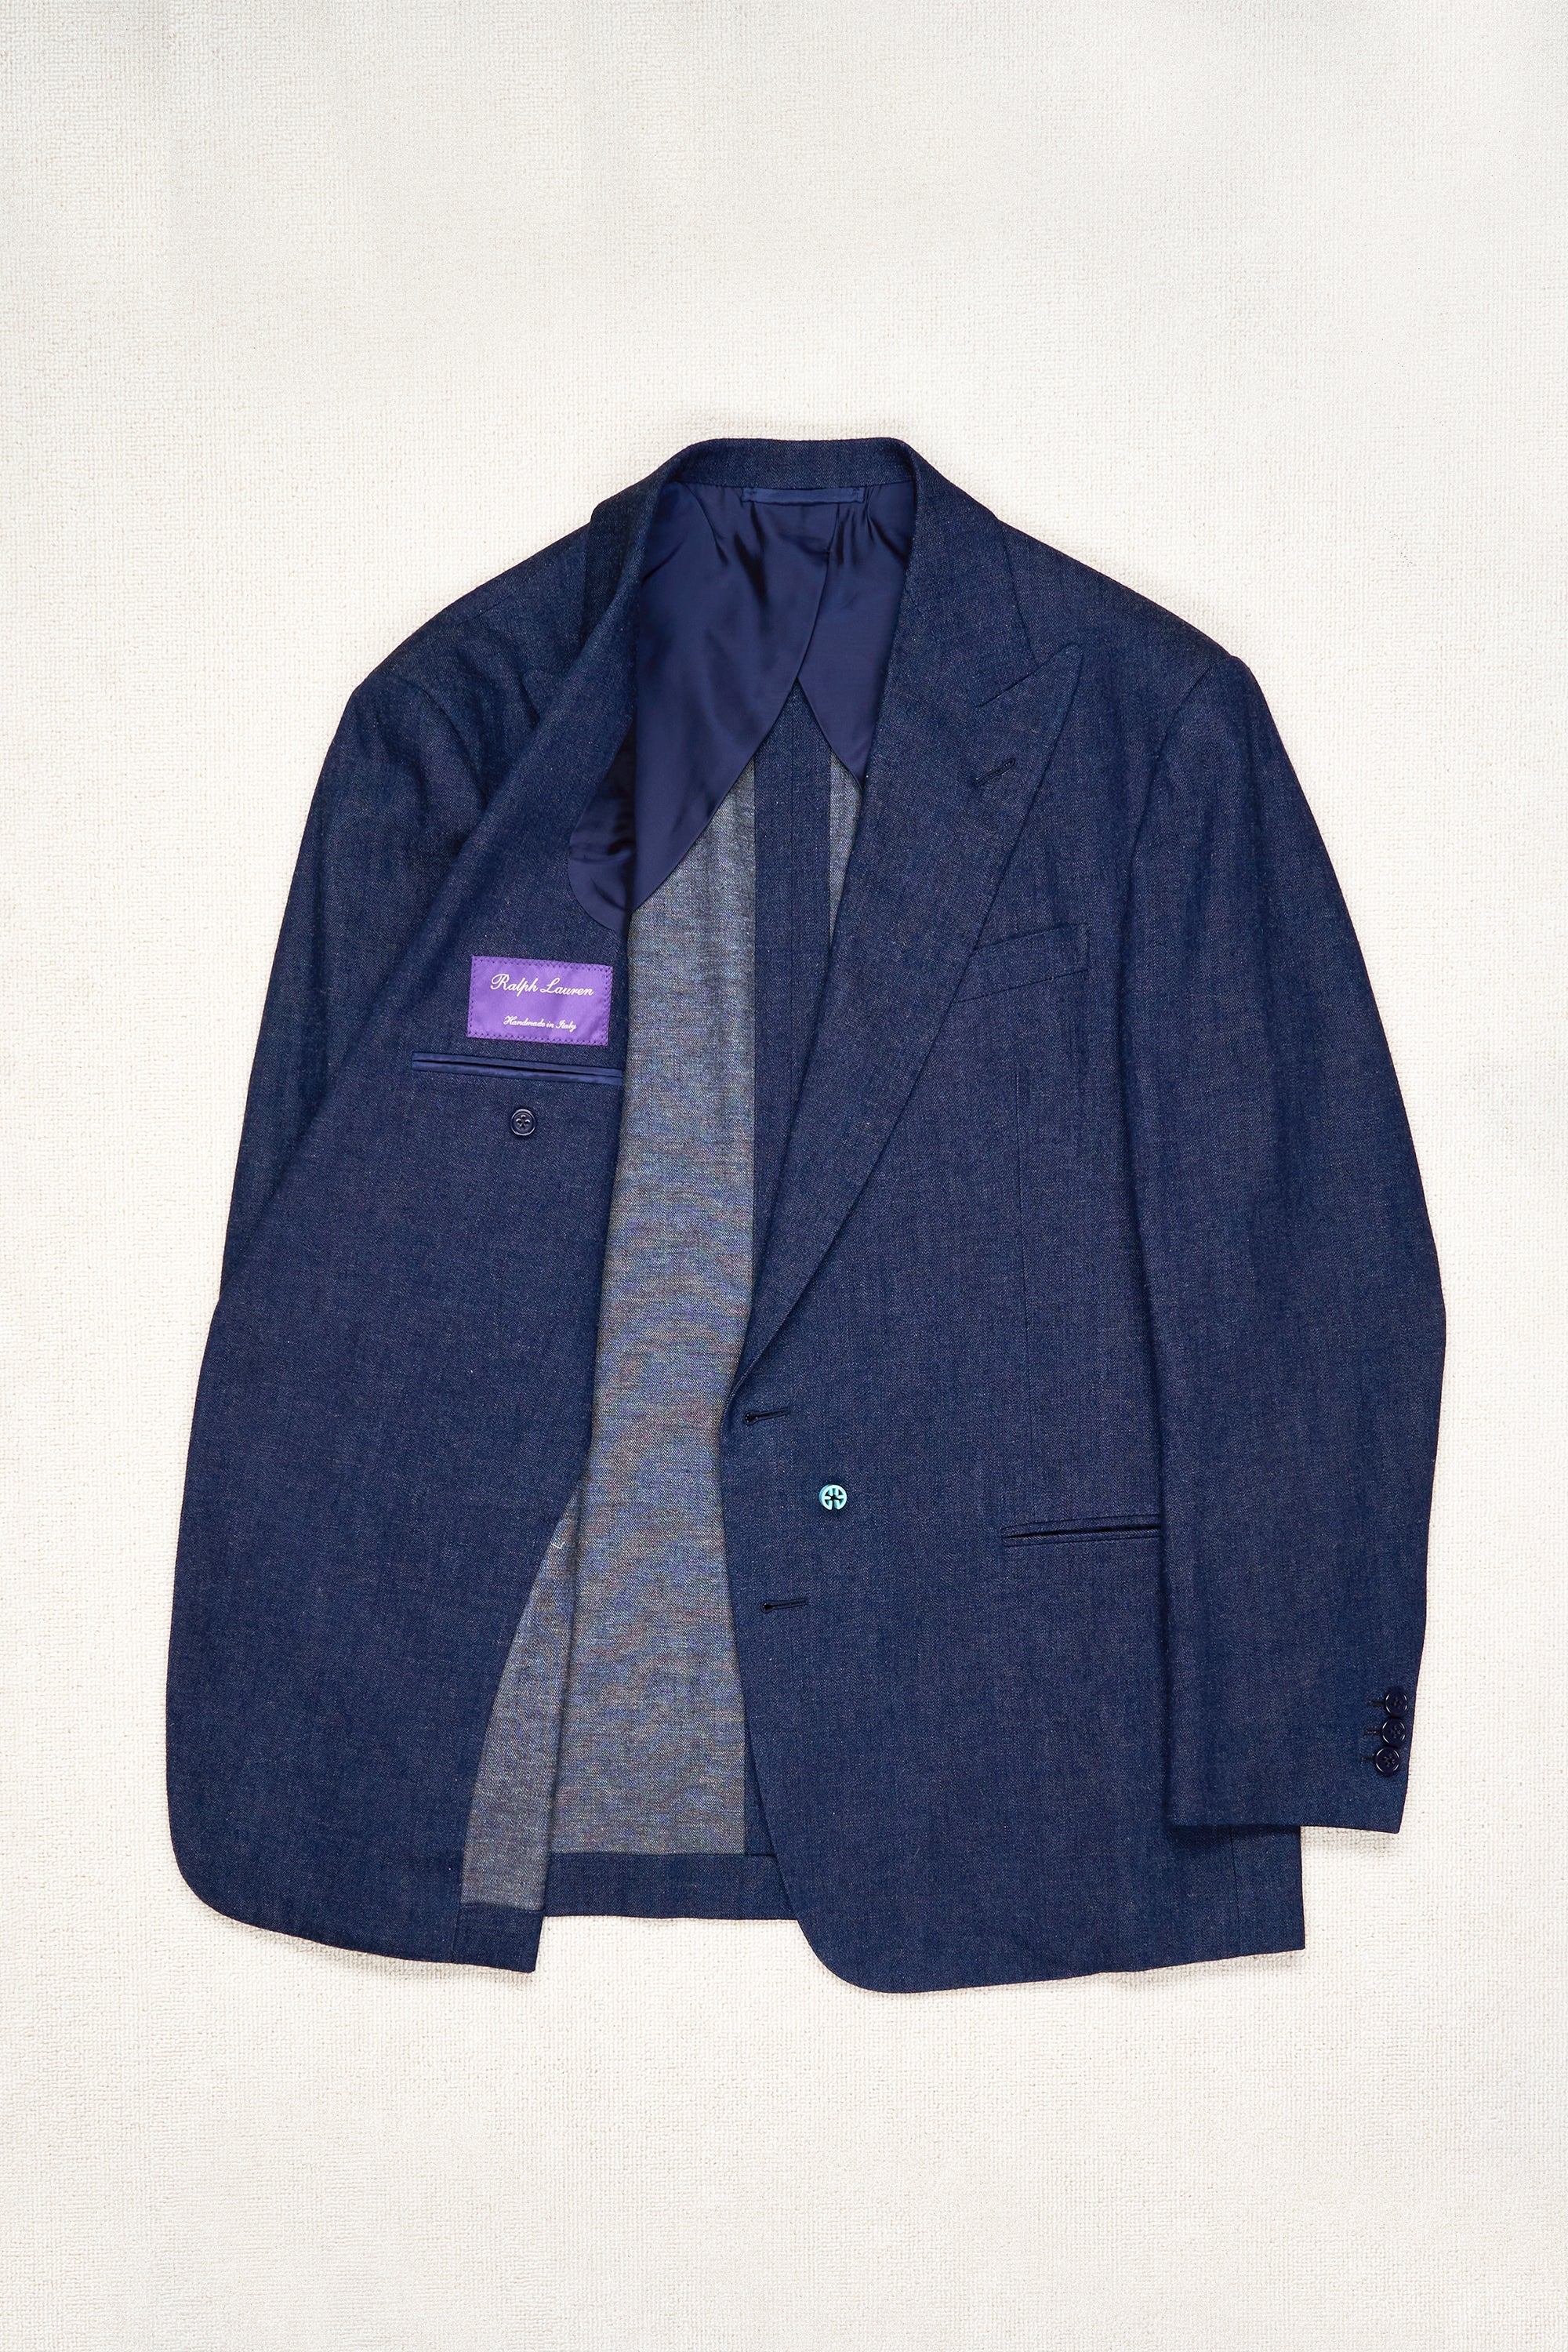 Ralph Lauren Purple Label Denim Cotton/Linen Suit